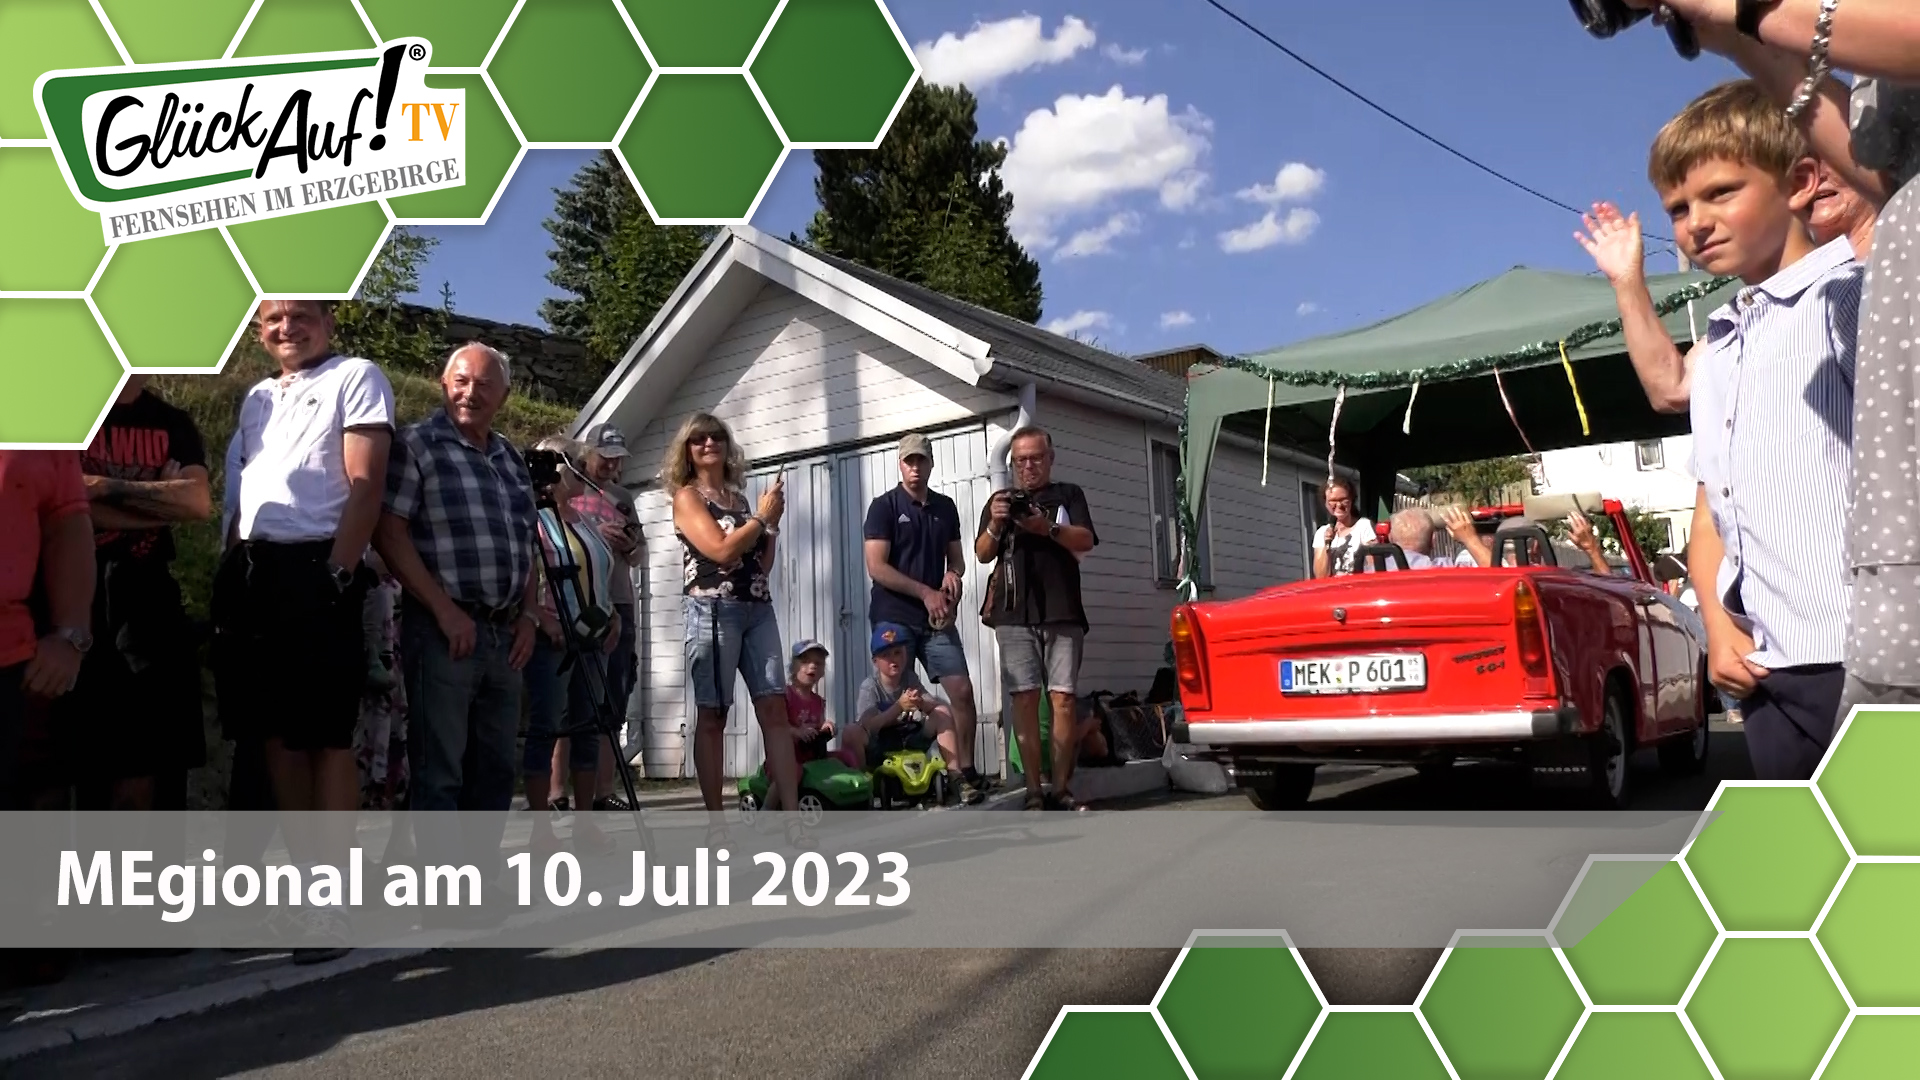 MEgional am 10. Juli 2023 u.a. mit der Straßenfreigabe in Lauterbach